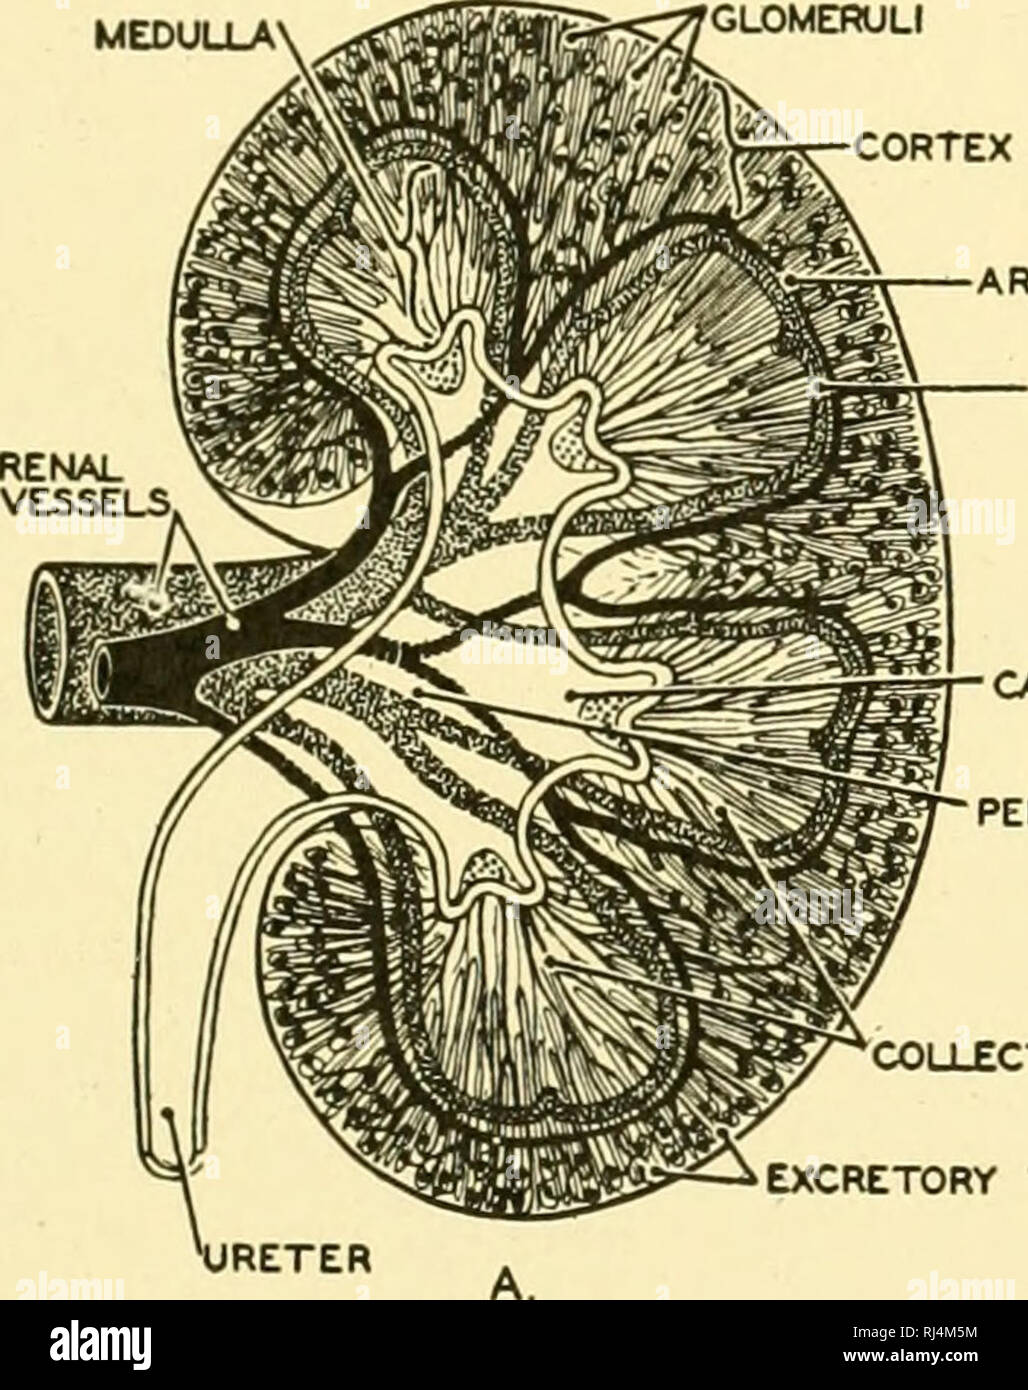 . Anatomie des chordés. Cordés ; anatomie, comparatif. Le système urogénital 305 unités fonctionnelles du rein. Dans le cortex rénal, le tul)ules sont compliquées et connecté avec noeuds de capillaires sanguins, les glomérules. Les pyramides, d'autre part, constituent principalement de recueillir directement les tubules, qui s'ouvrent sur le bassinet par de nombreuses ouvertures situées aux extrémités des papilles. Chaque tubule rénal commence dans une capsule sphérique entourant une glomeru- lus, la structure qui est connu comme un corpuscule rénal, (Fig. 271) La résiliation d'un tubule proximal est une capsule de Bowman (Fig. Banque D'Images